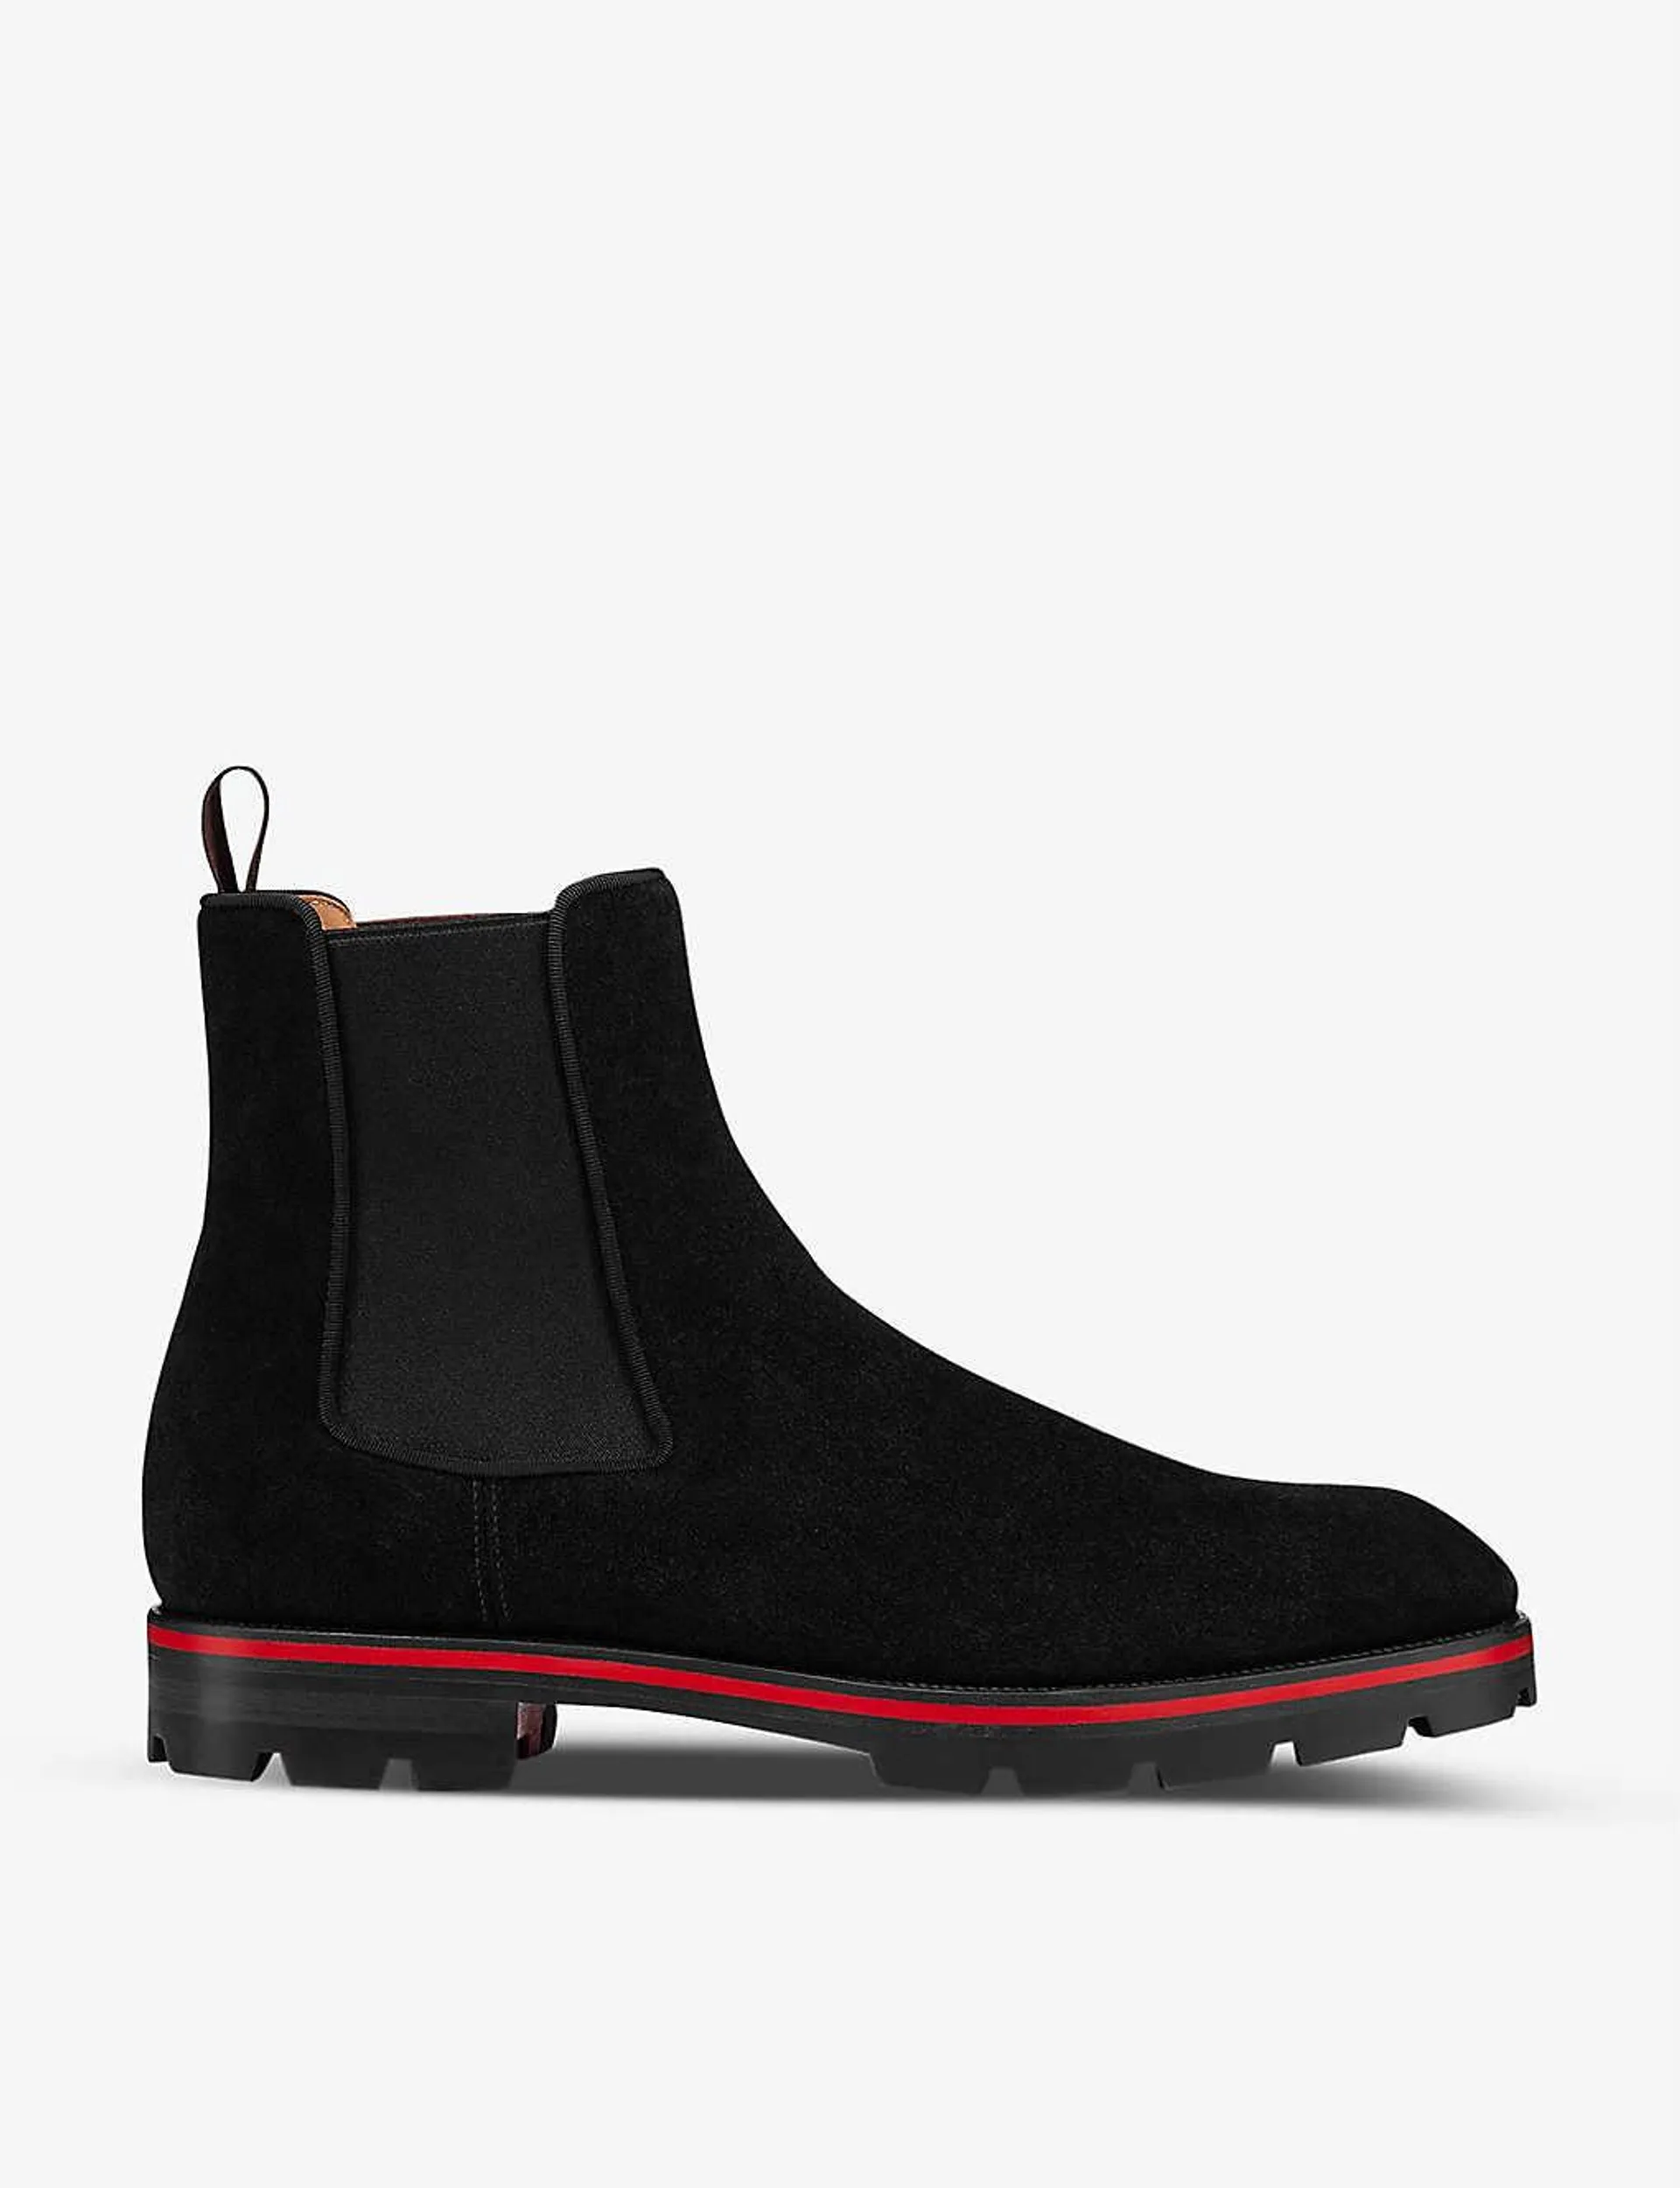 Alpinono leather Chelsea boots